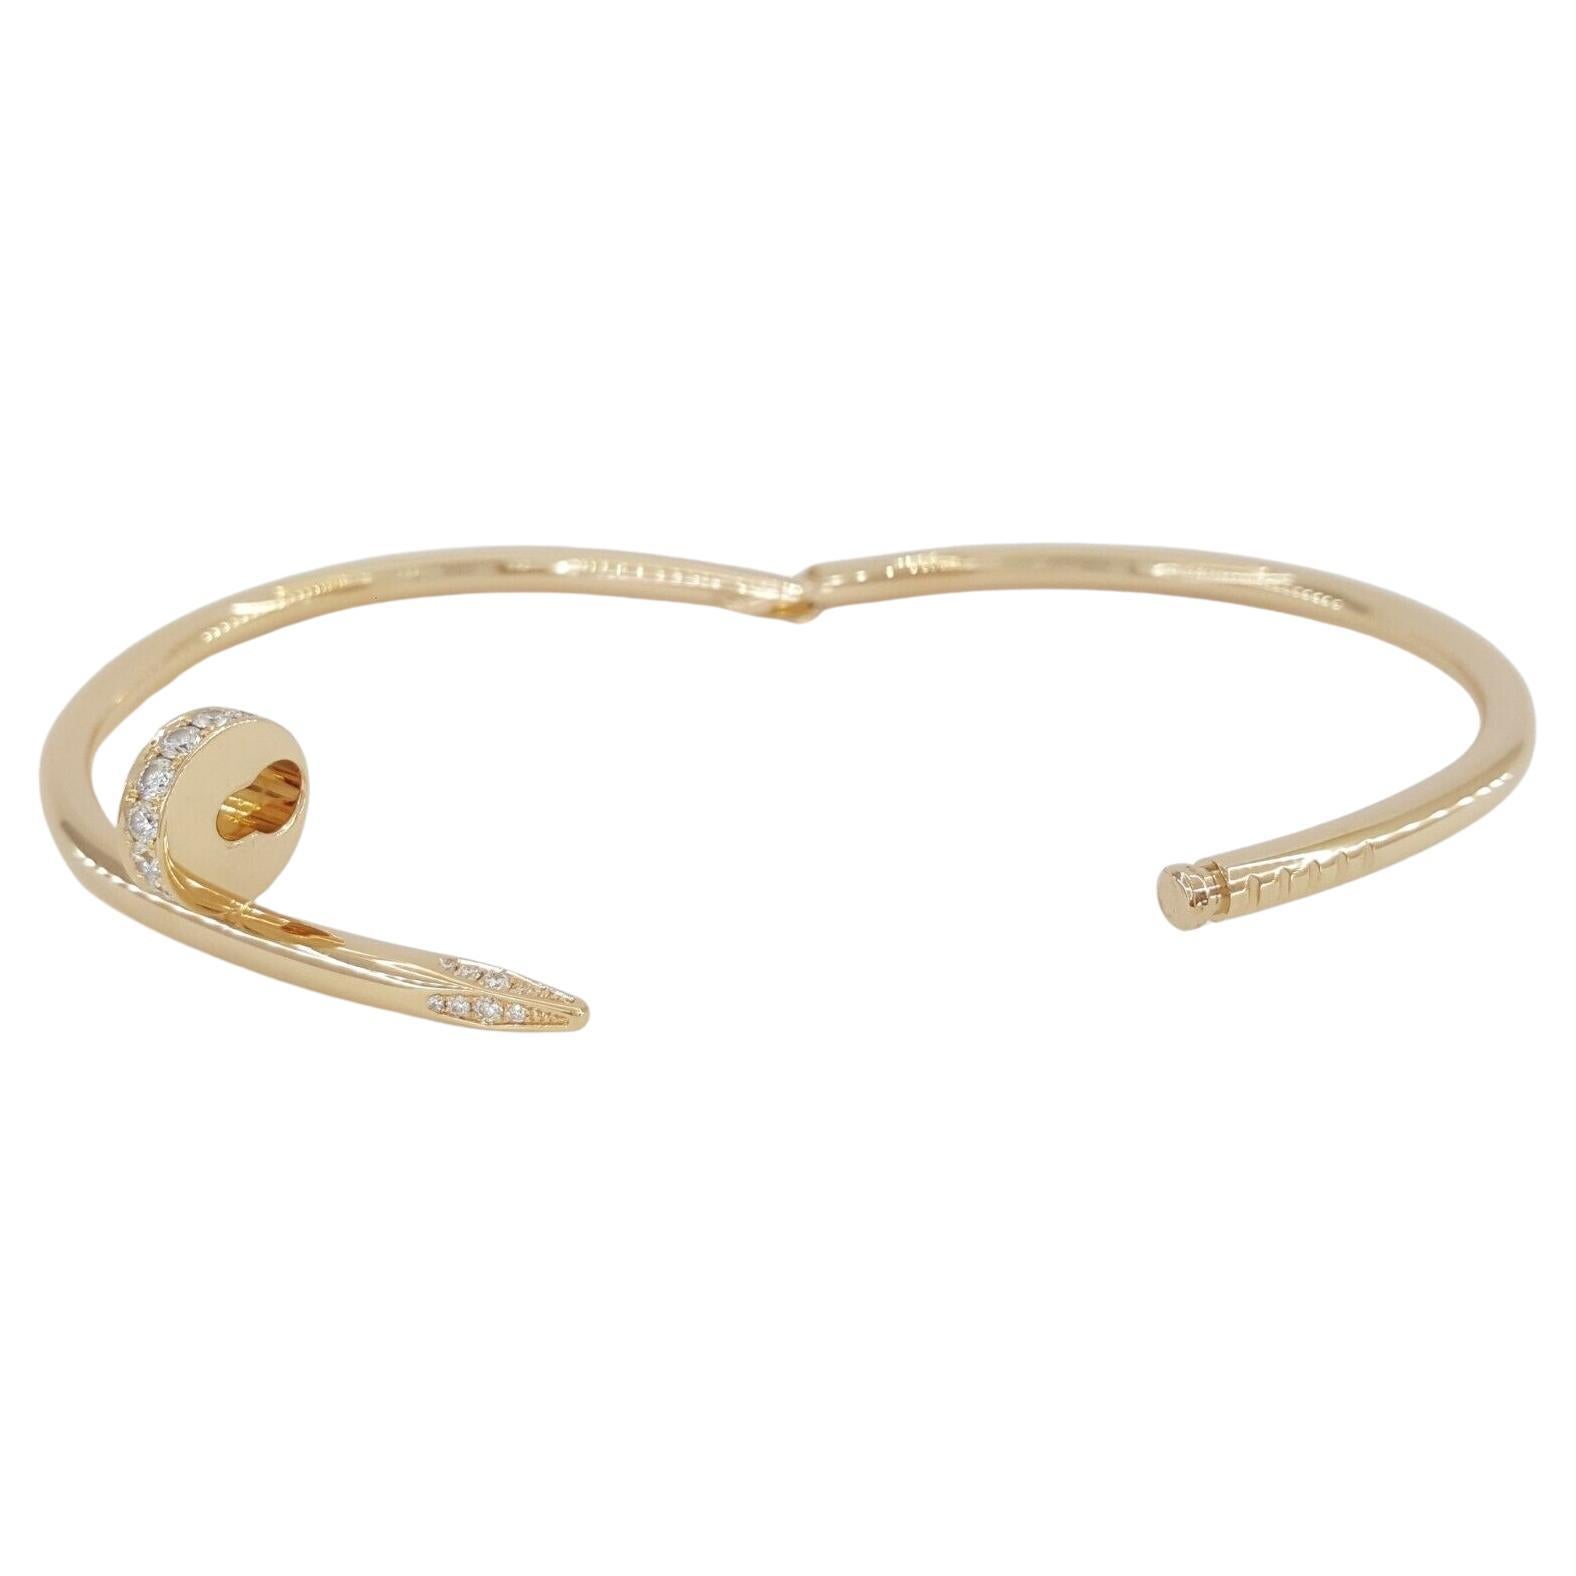 Cartier Juste Un Clou 18K Rose Gold Diamond Bracelet, ein bemerkenswertes Stück mit einer Breite von 3,5 mm und in Größe 18 entworfen. Dieses massive Armband aus 18 Karat Roségold wiegt 31,9 Gramm, hat ein 3,3 mm breites Band und einen 14,2 mm